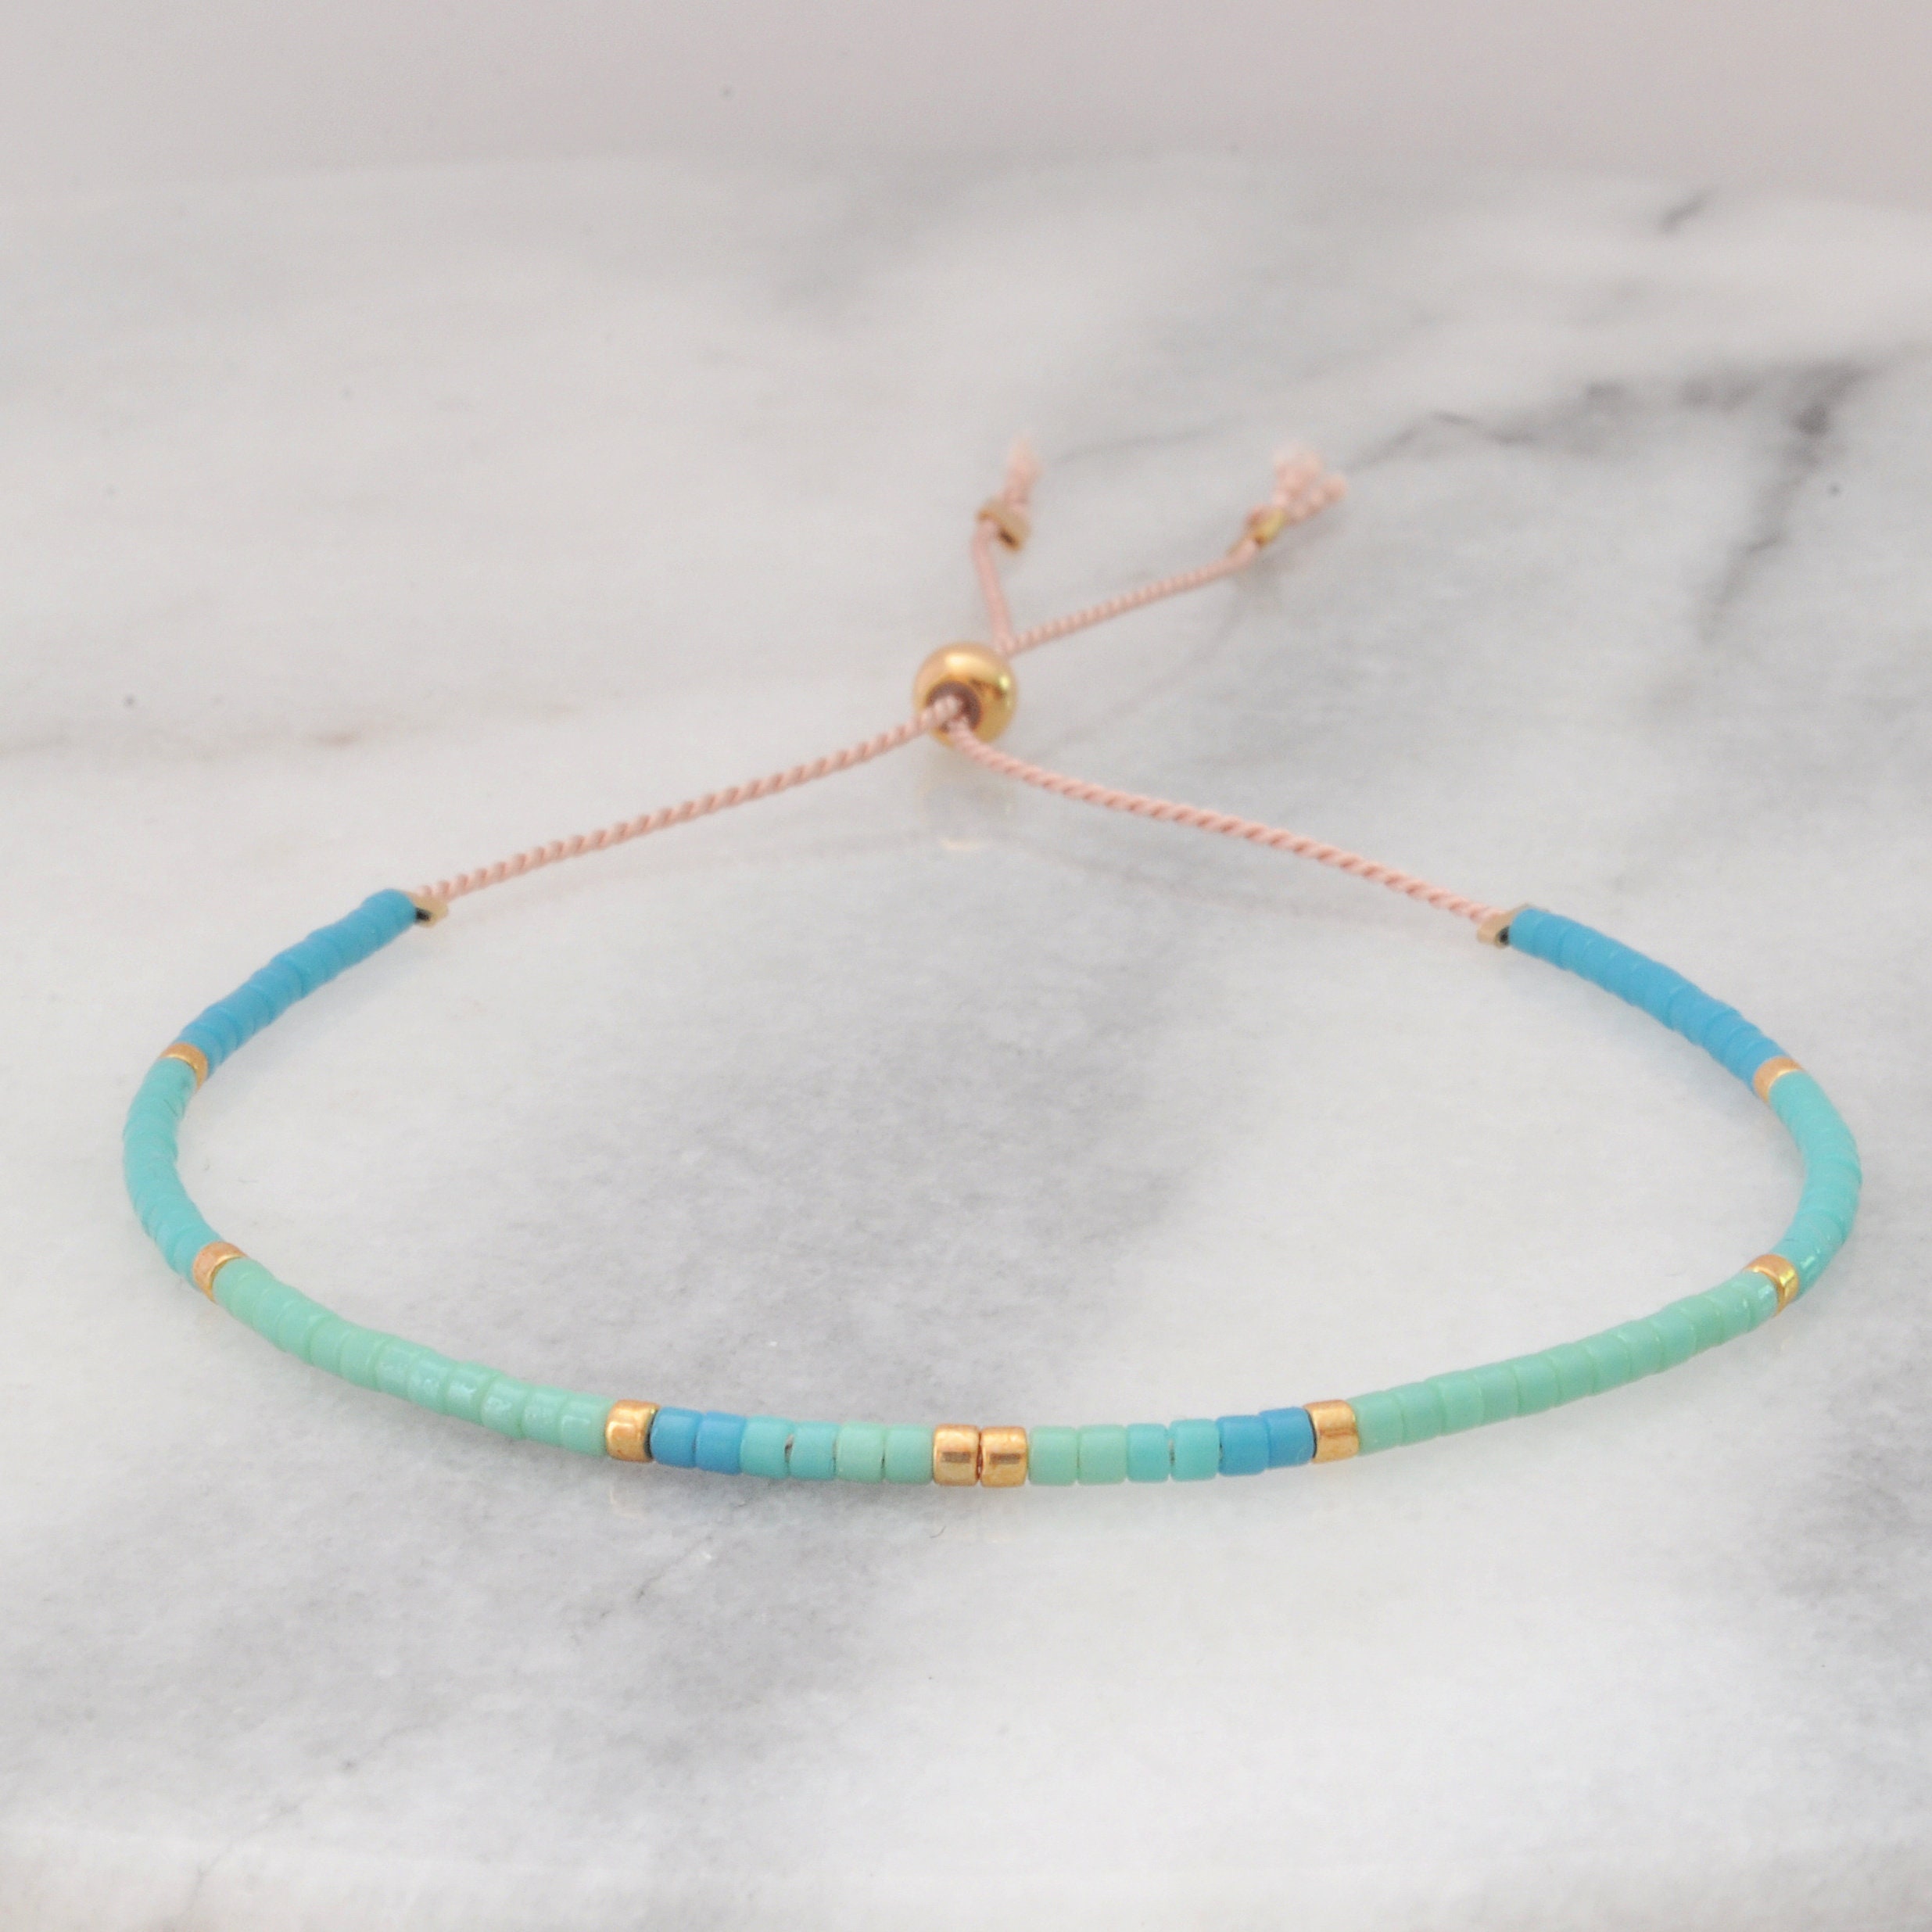 Wewoo - 50m Corde élastique ronde perles Fil Stretch / String / pour Collier  Bracelet Fabrication de bijoux (blanc) - Perles - Rue du Commerce